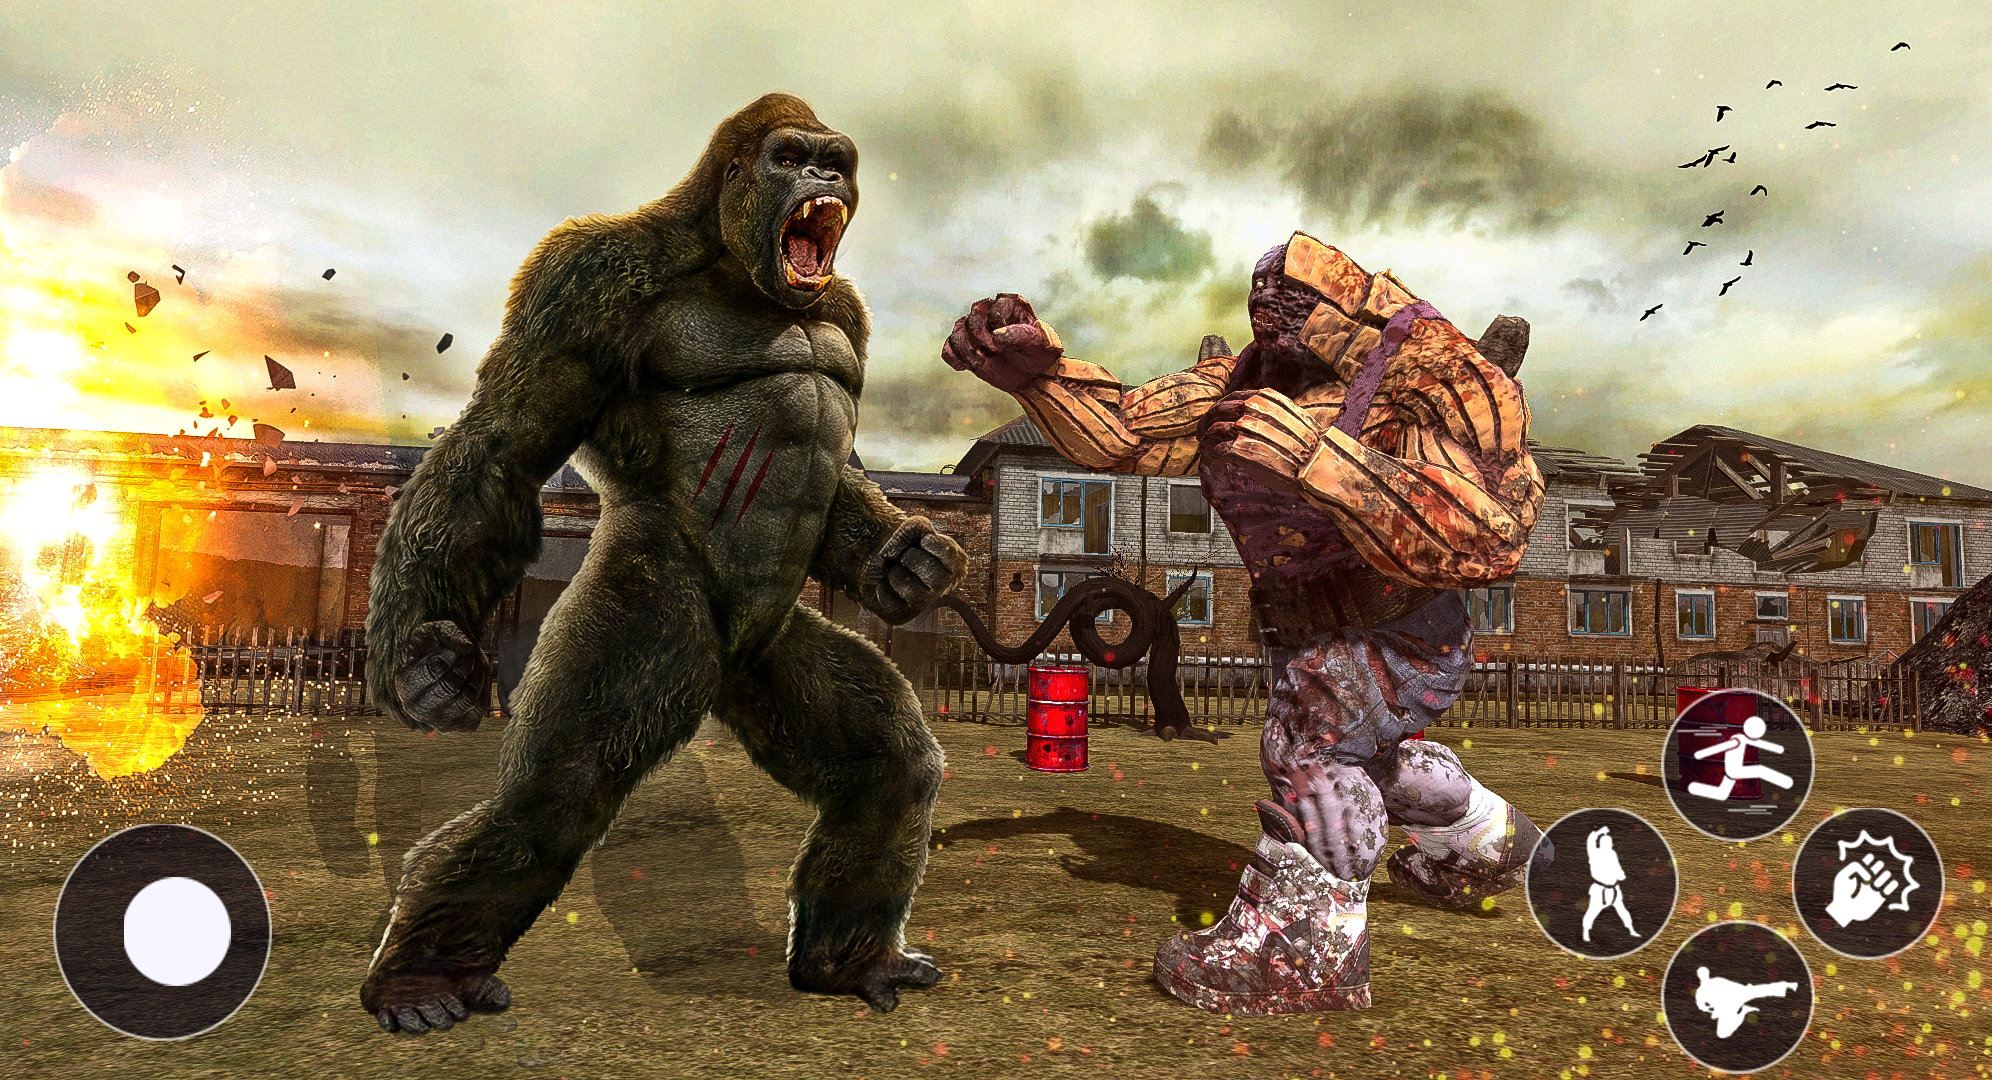 Fighting gorilla vs monster